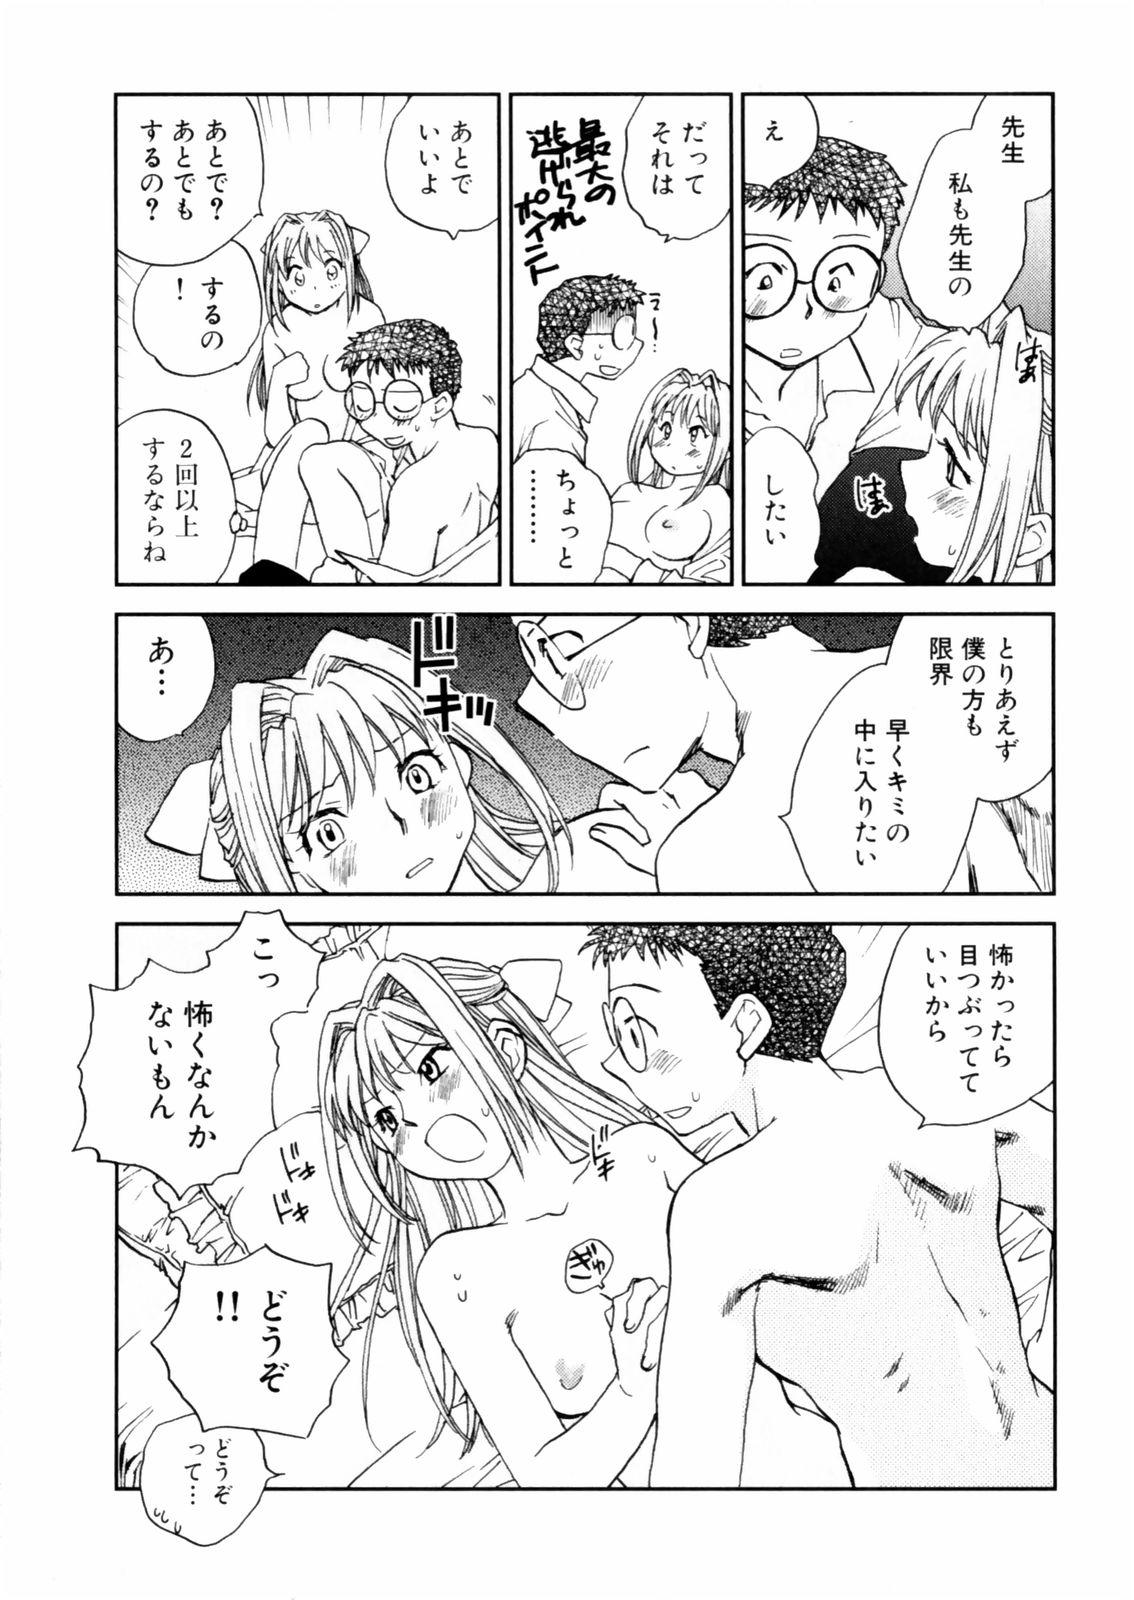 [Okano Ahiru] Hanasake ! Otome Juku (Otome Private Tutoring School) Vol.2 100